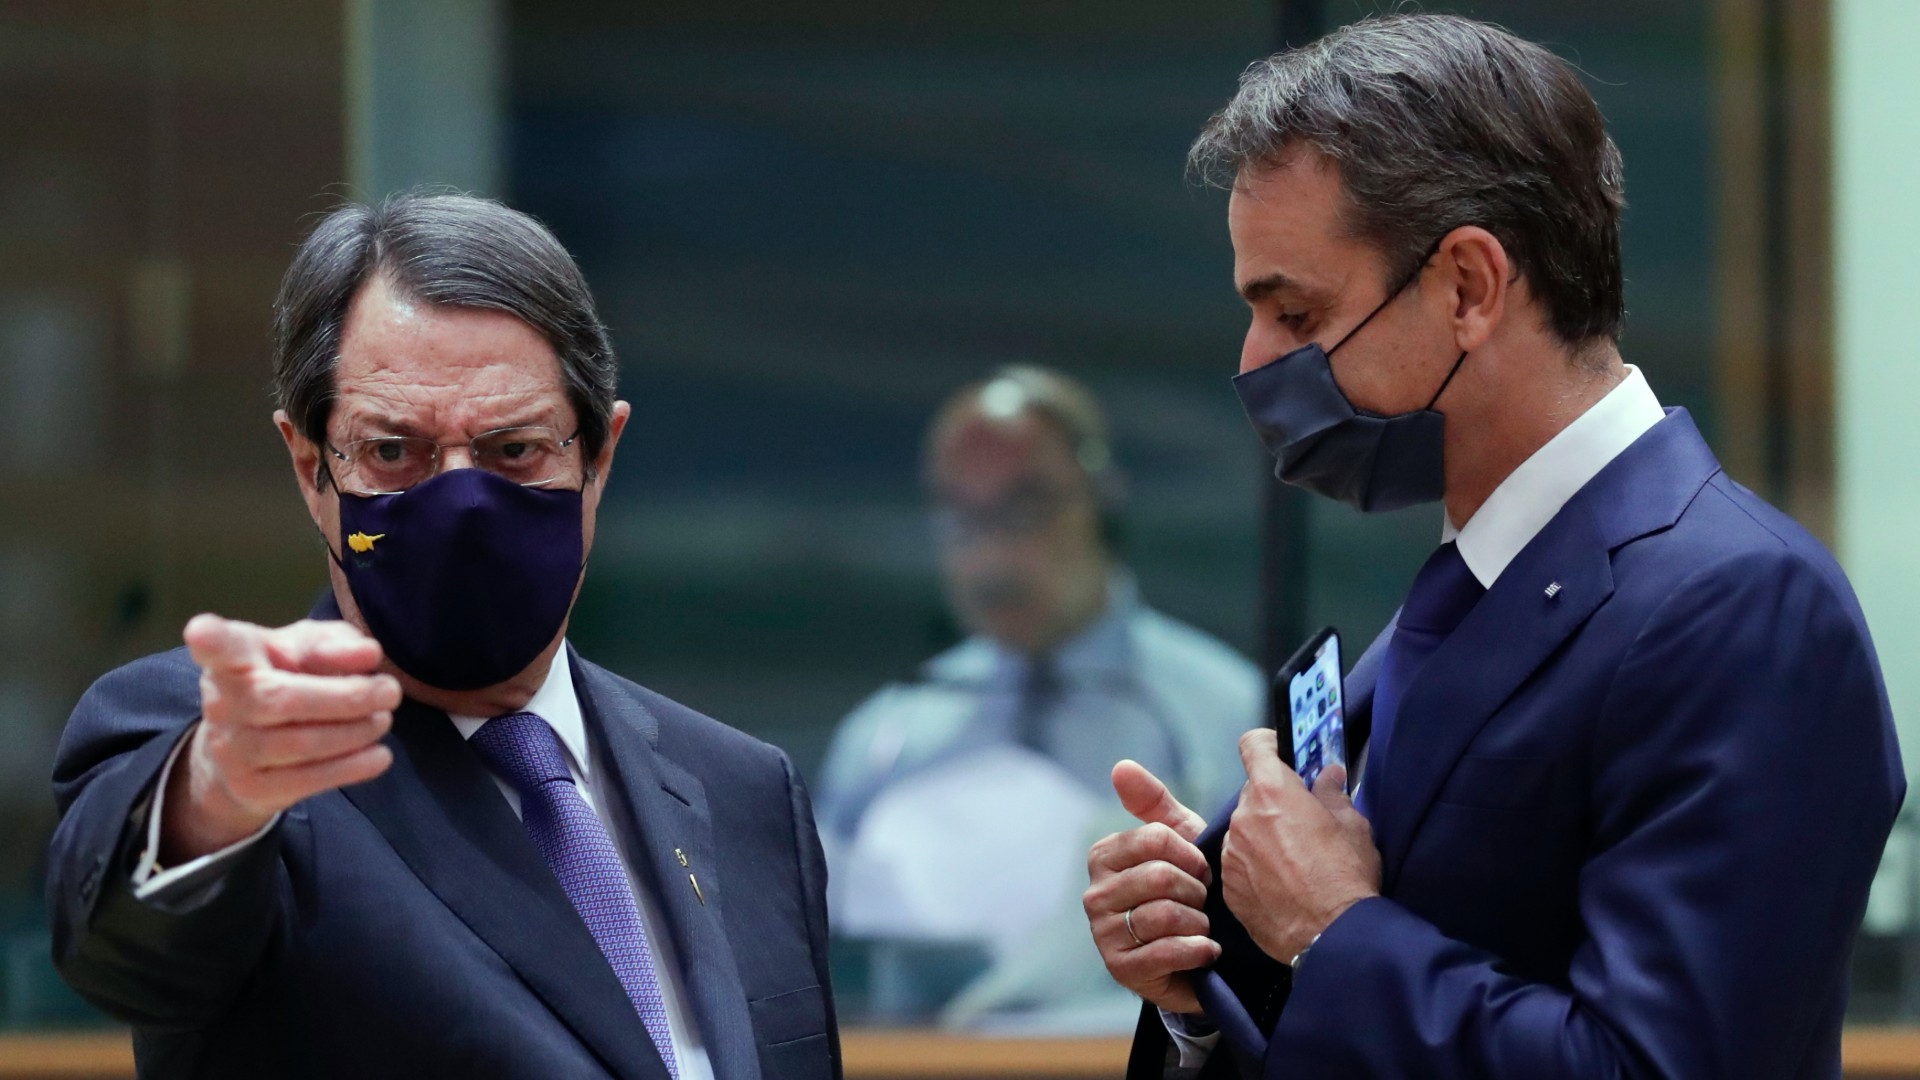  الرئيس القبرصي نيكوس اناستاسيادس (يسار) ورئيس الوزراء اليوناني كيرياكوس ميتسوتاكيس يصلان إلى قمة الاتحاد الأوروبي في بروكسل